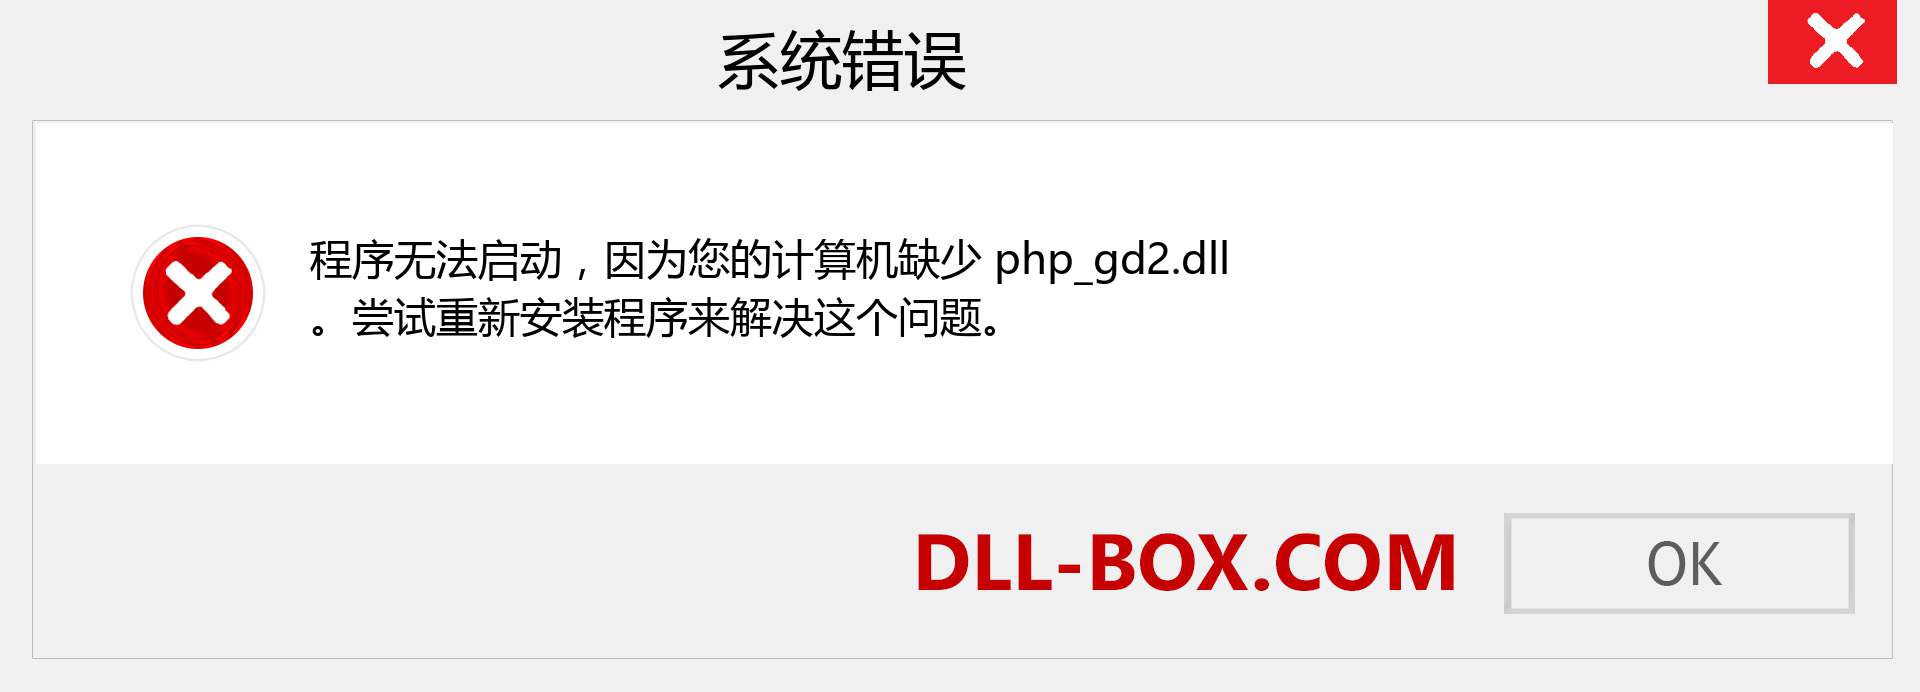 php_gd2.dll 文件丢失？。 适用于 Windows 7、8、10 的下载 - 修复 Windows、照片、图像上的 php_gd2 dll 丢失错误